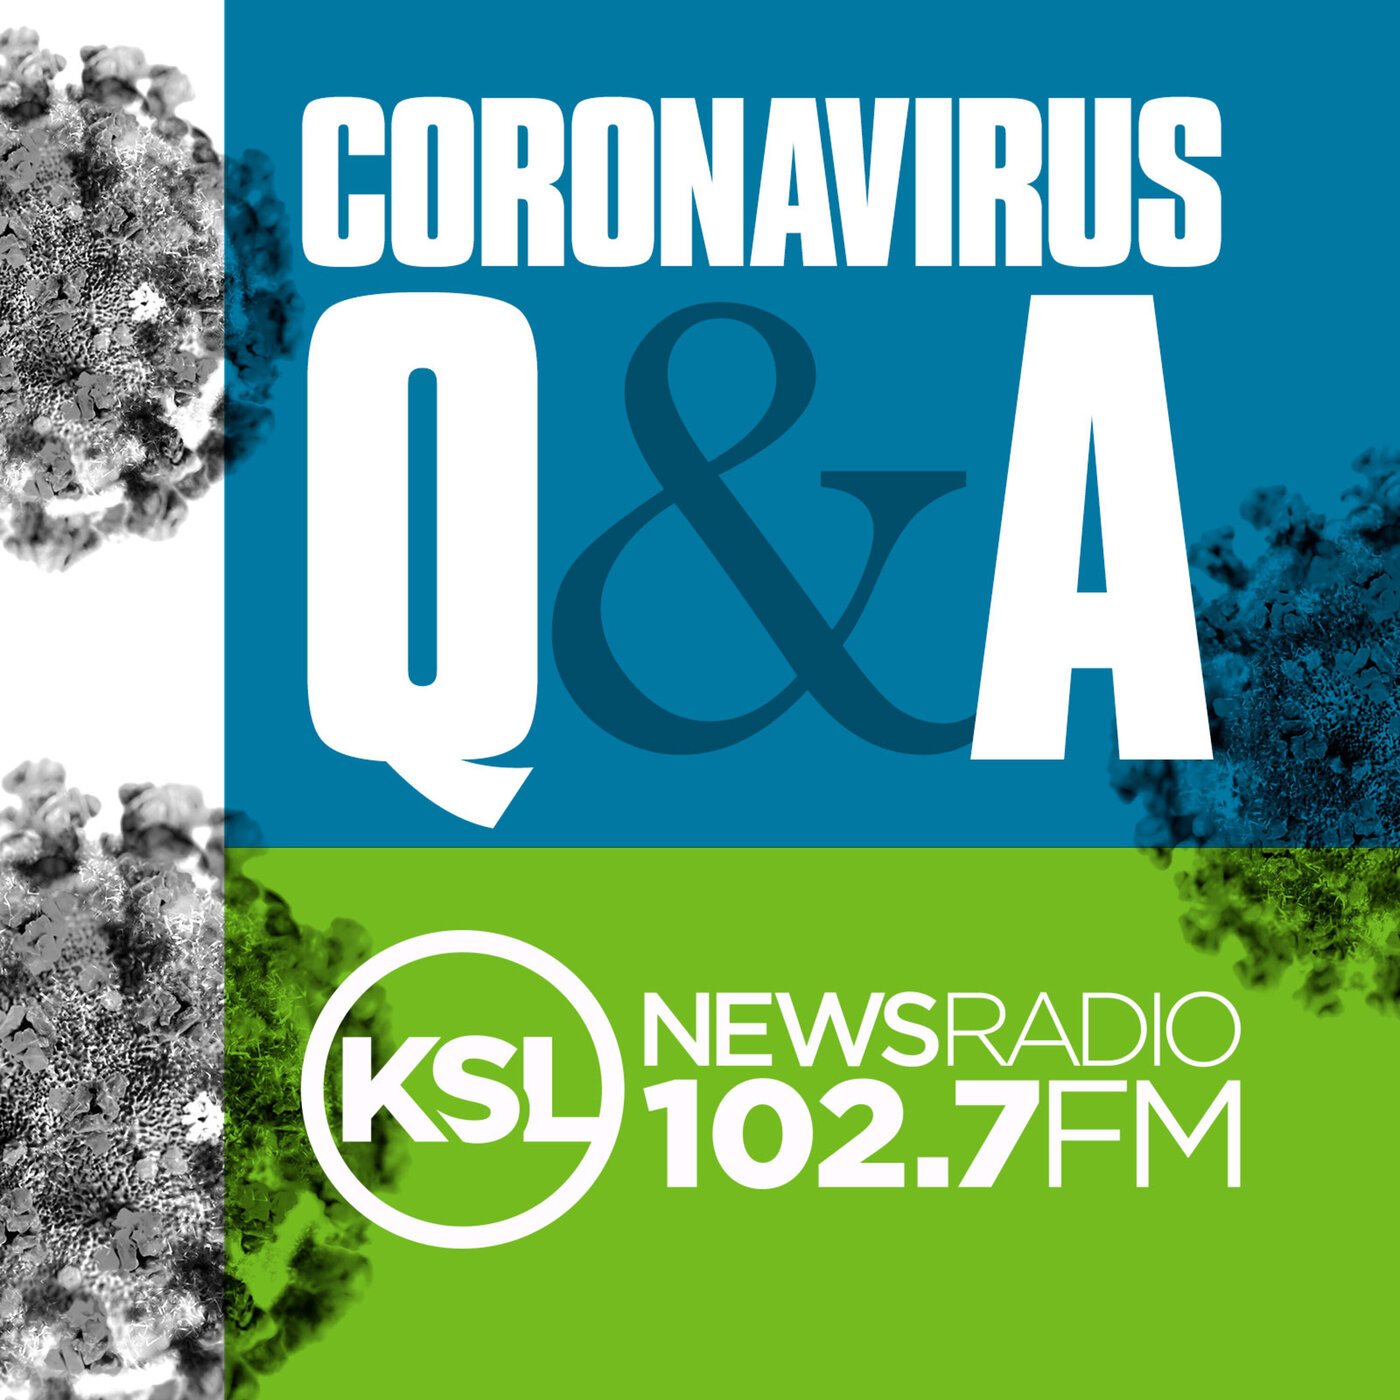 Coronavirus Update November 23